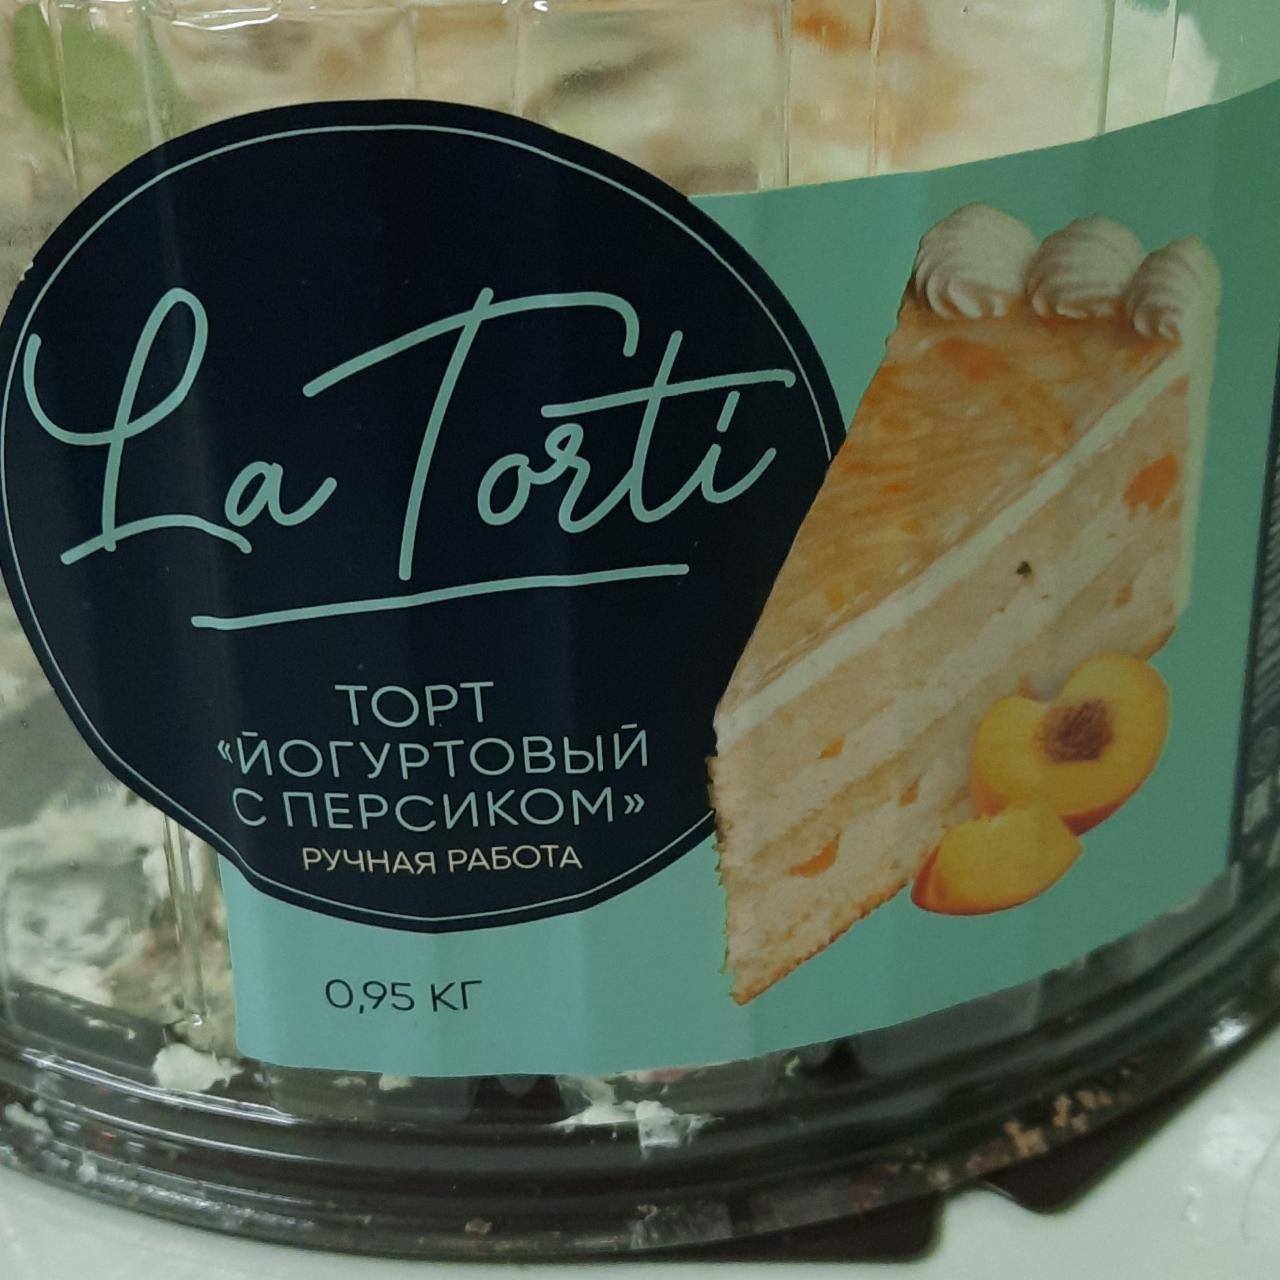 Фото - Торт йогуртовый с персиком La Torti